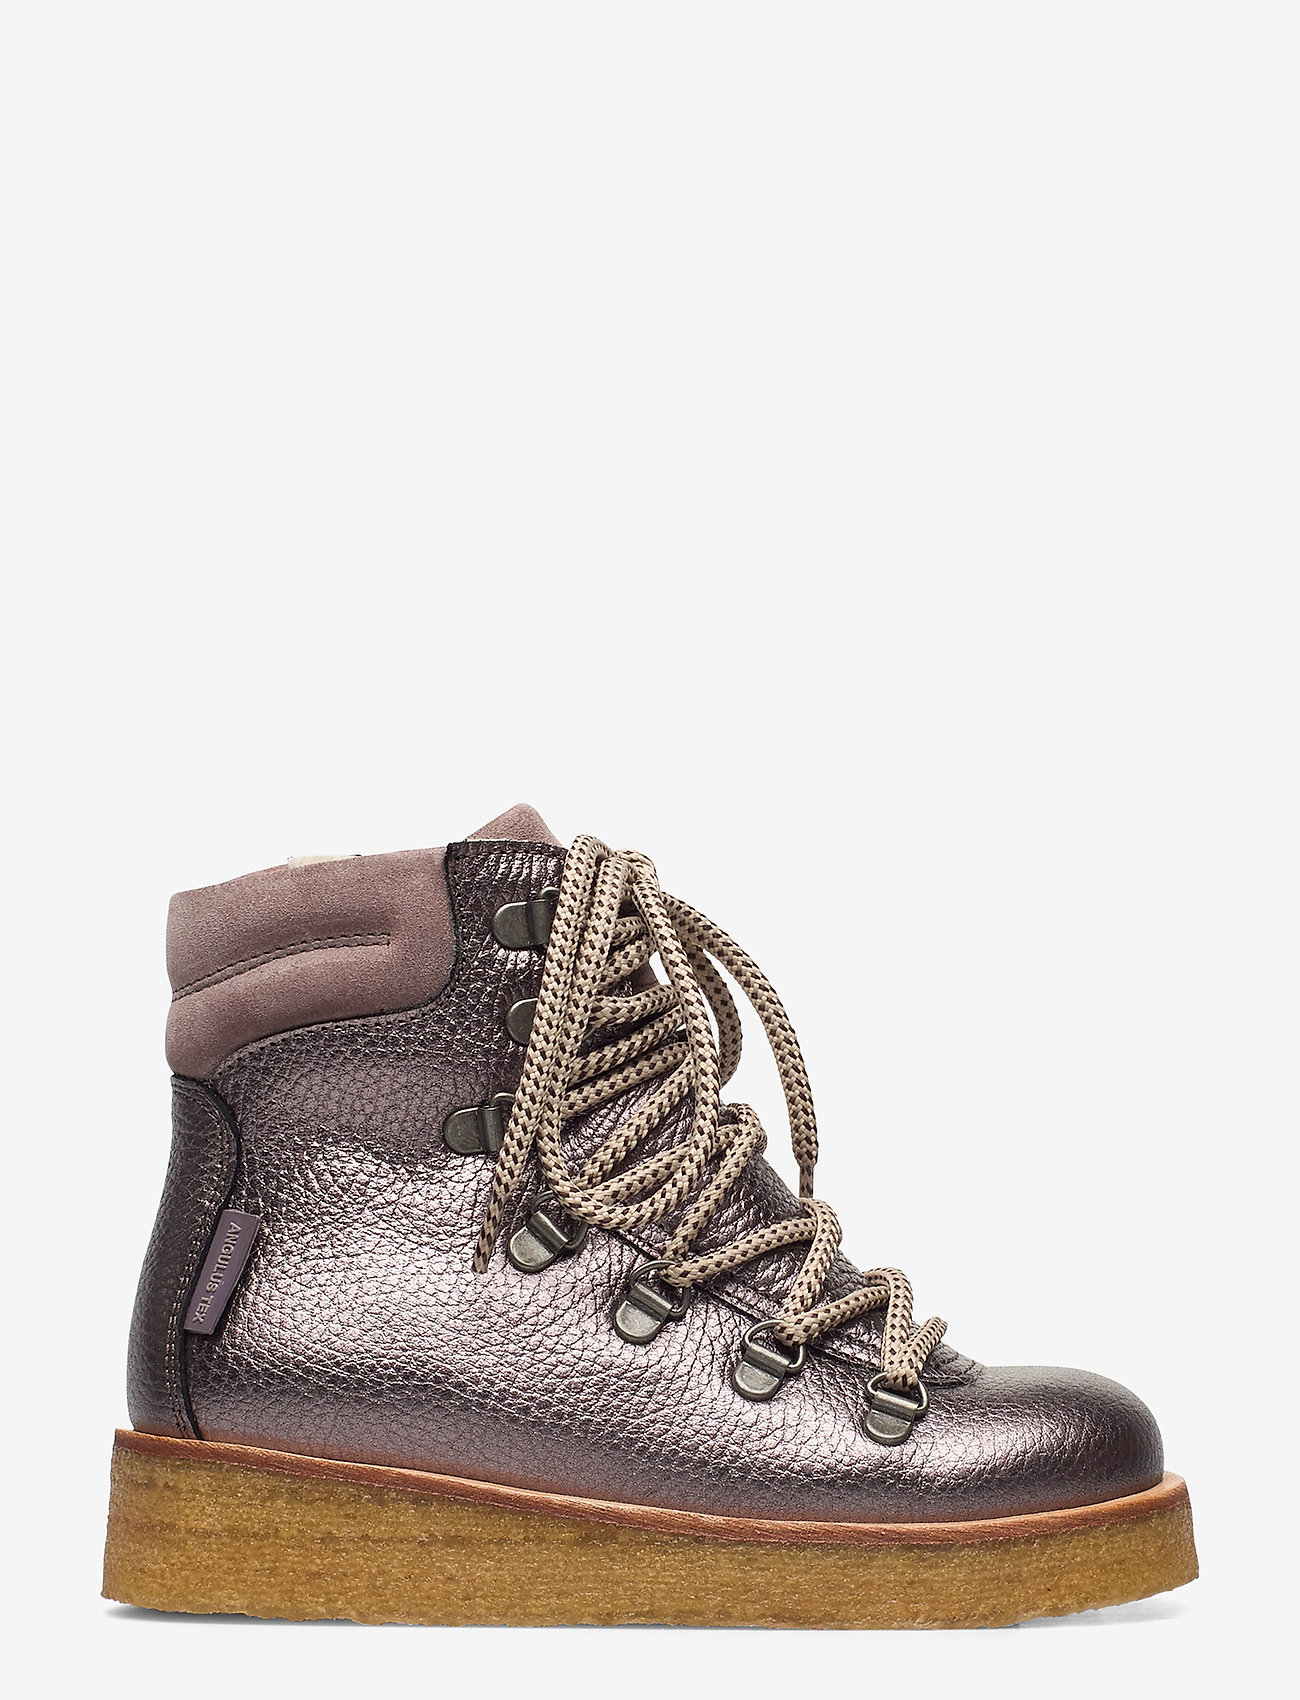 ANGULUS - Boots - flat - lapset - 1538/2202/2202 mauve/lavender/ - 1